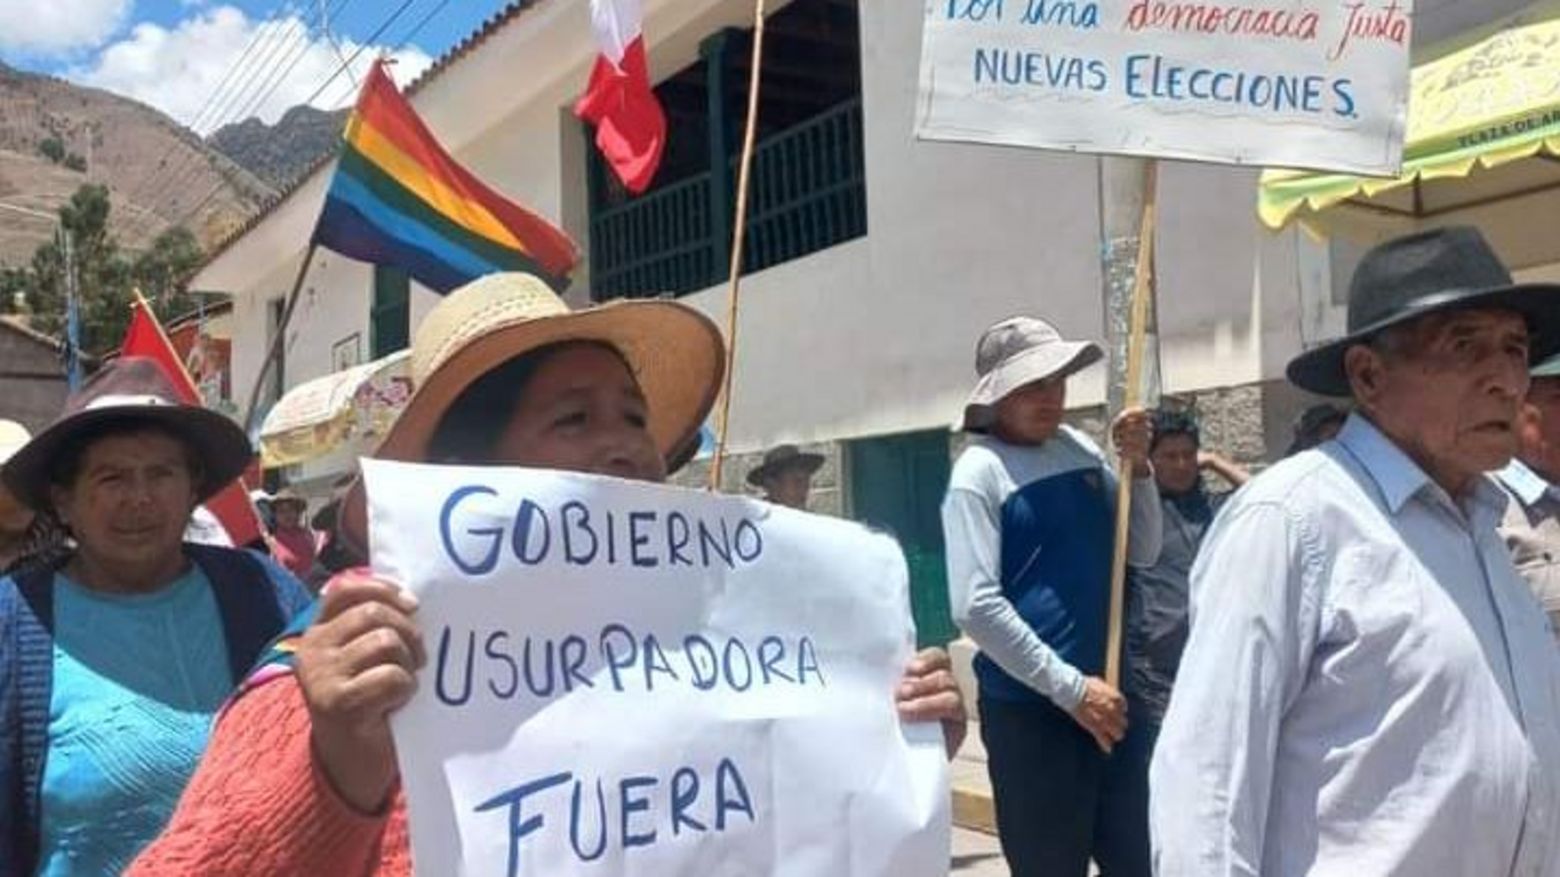 Protest Peru Unterdrückung